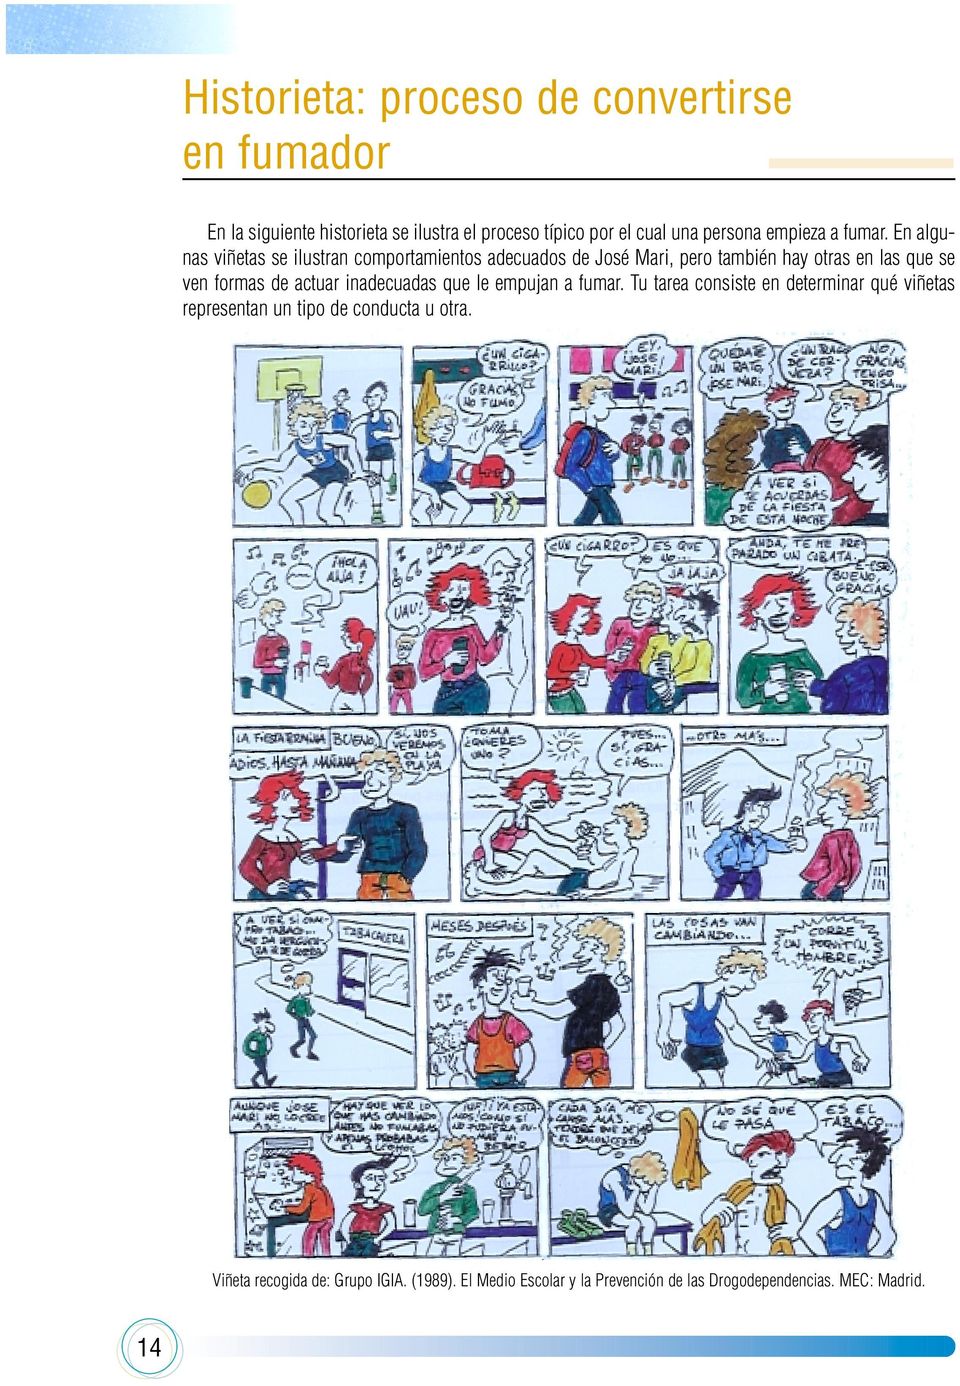 En algunas viñetas se ilustran comportamientos adecuados de José Mari, pero también hay otras en las que se ven formas de